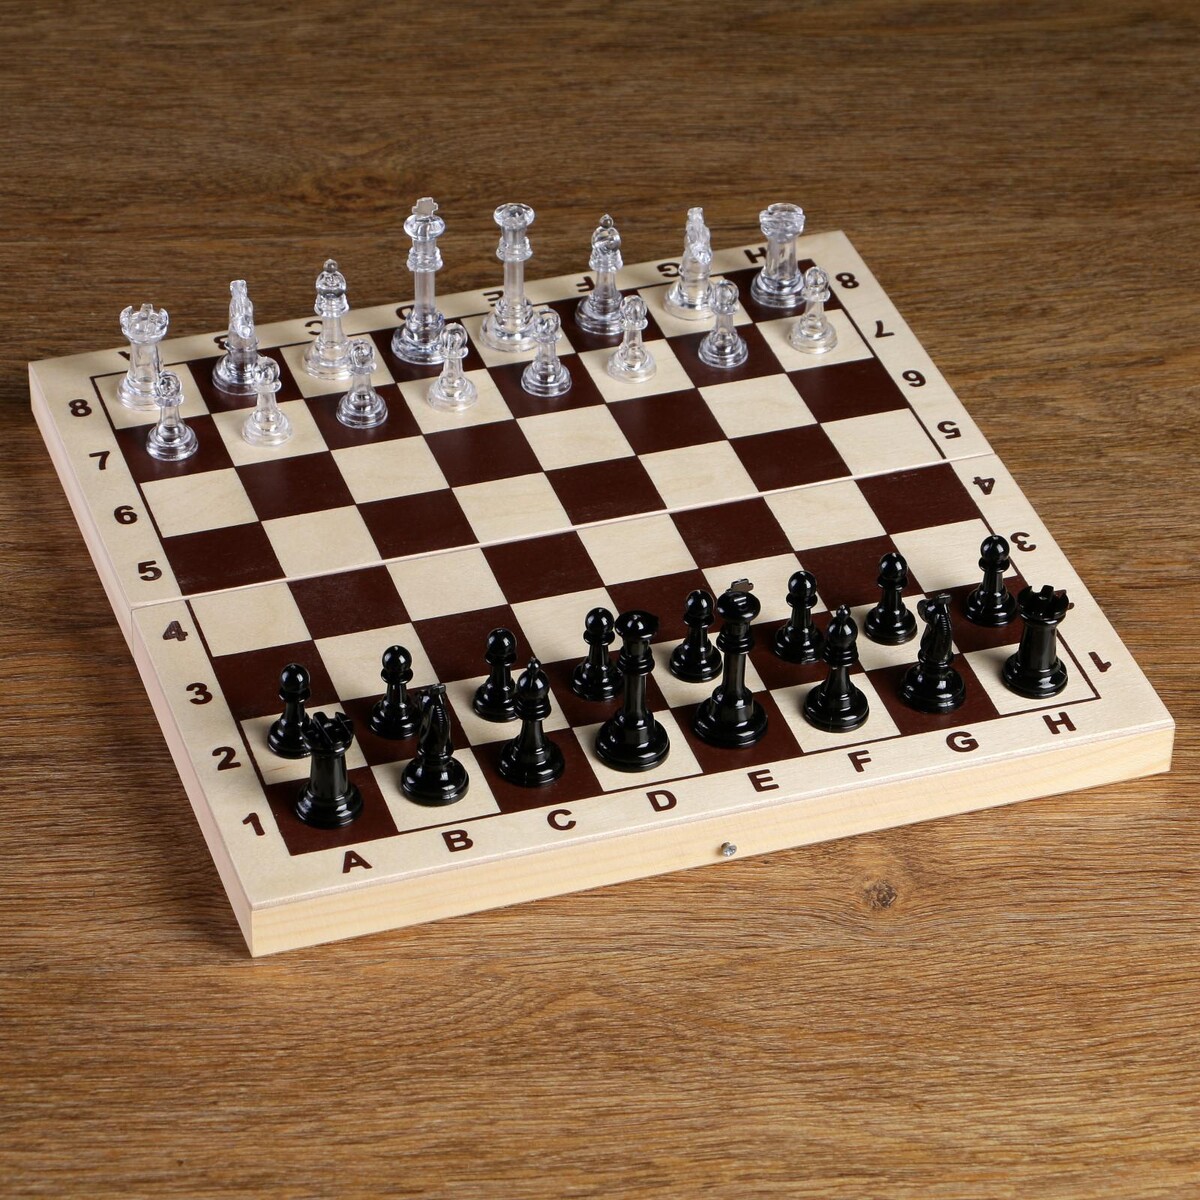 Шахматные фигуры, король h-5.8 см, пешка h-2.8 см железный король